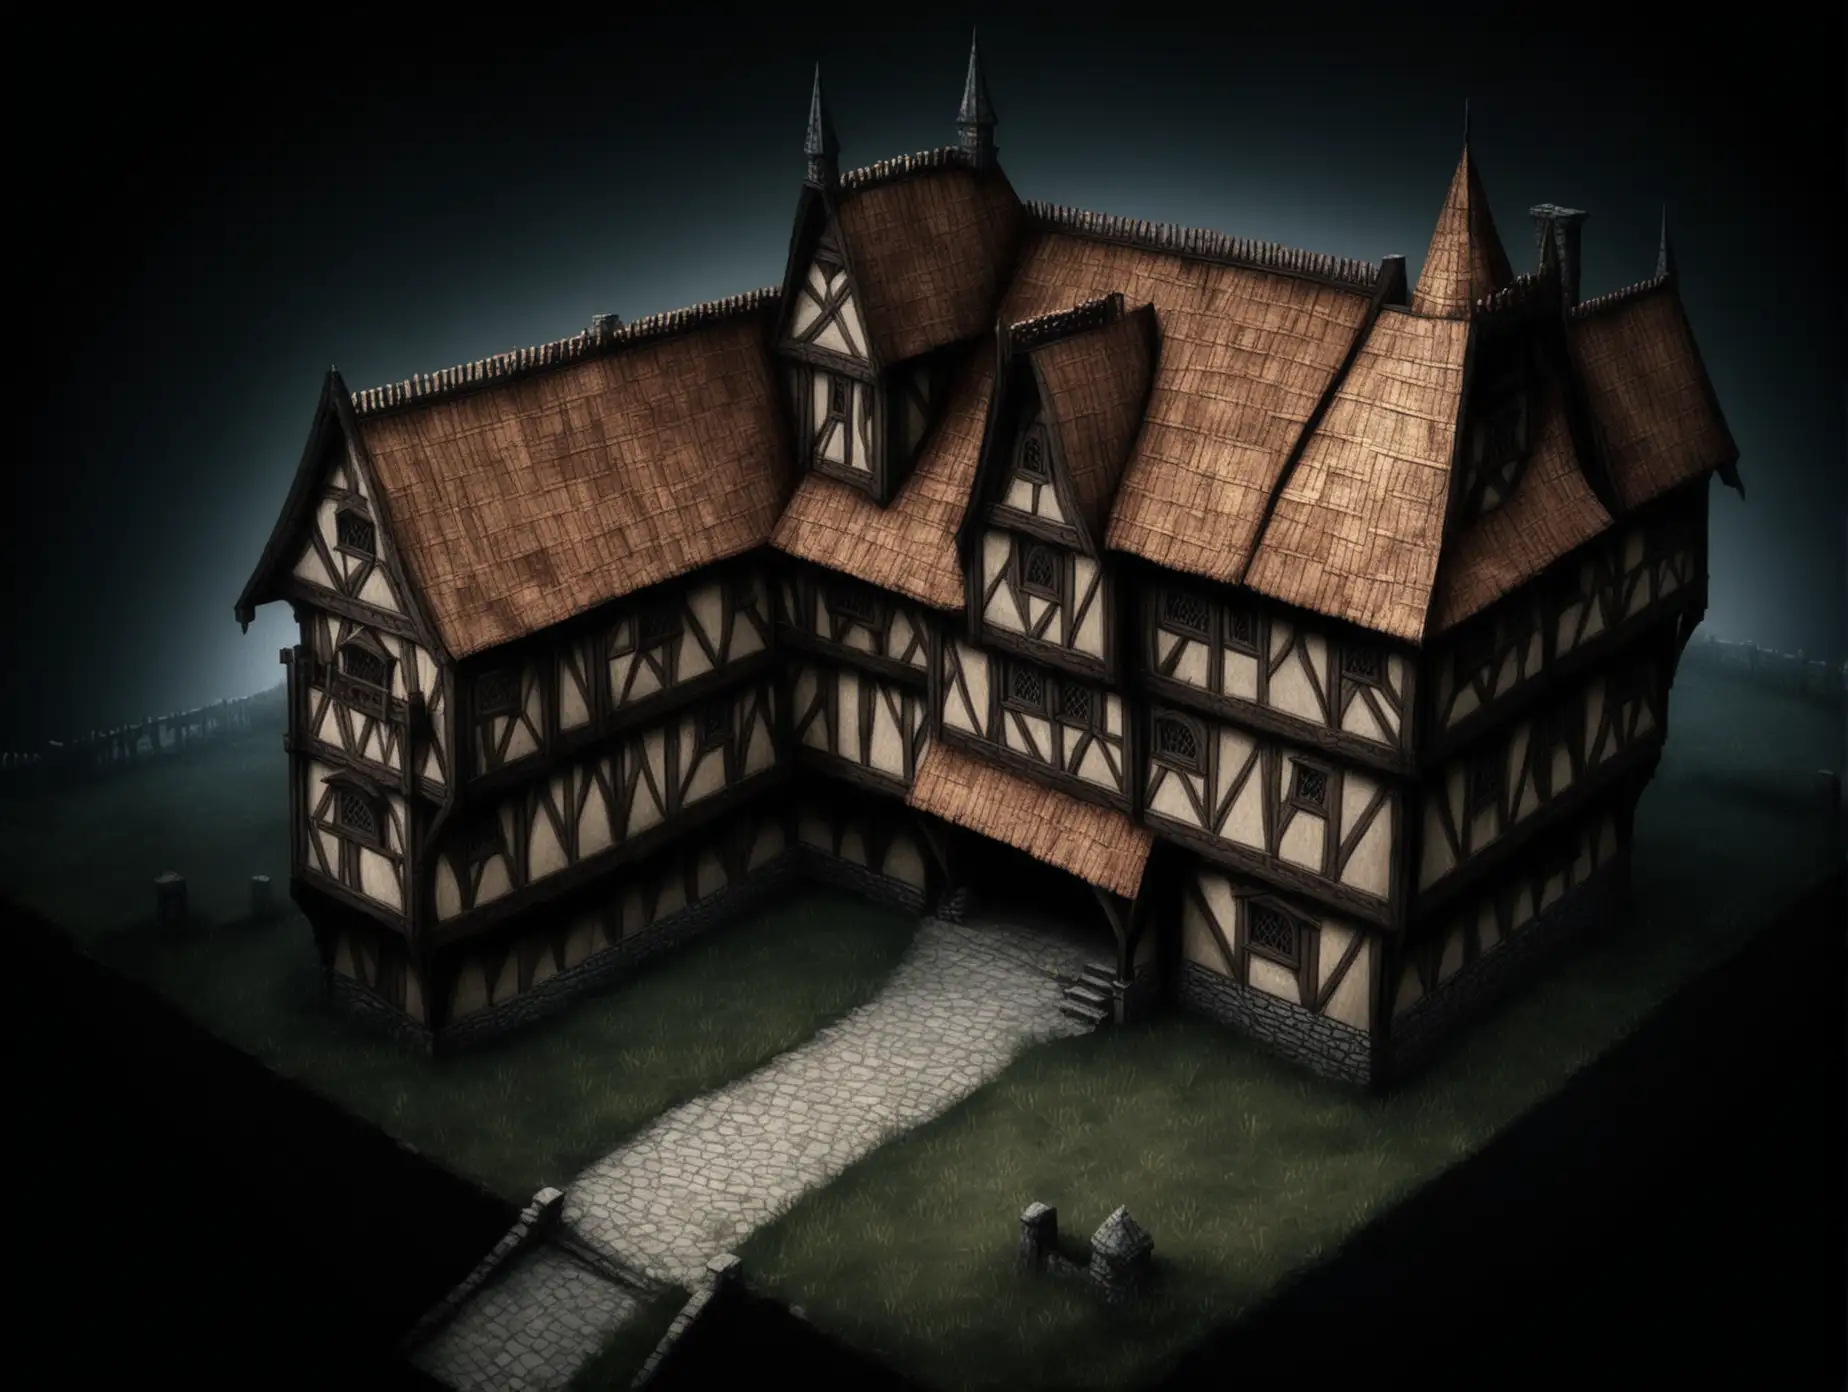 двухэтажного дома в средневековом стиле, фэнтэзи, на темном экране, внешний общий план, вид сверху